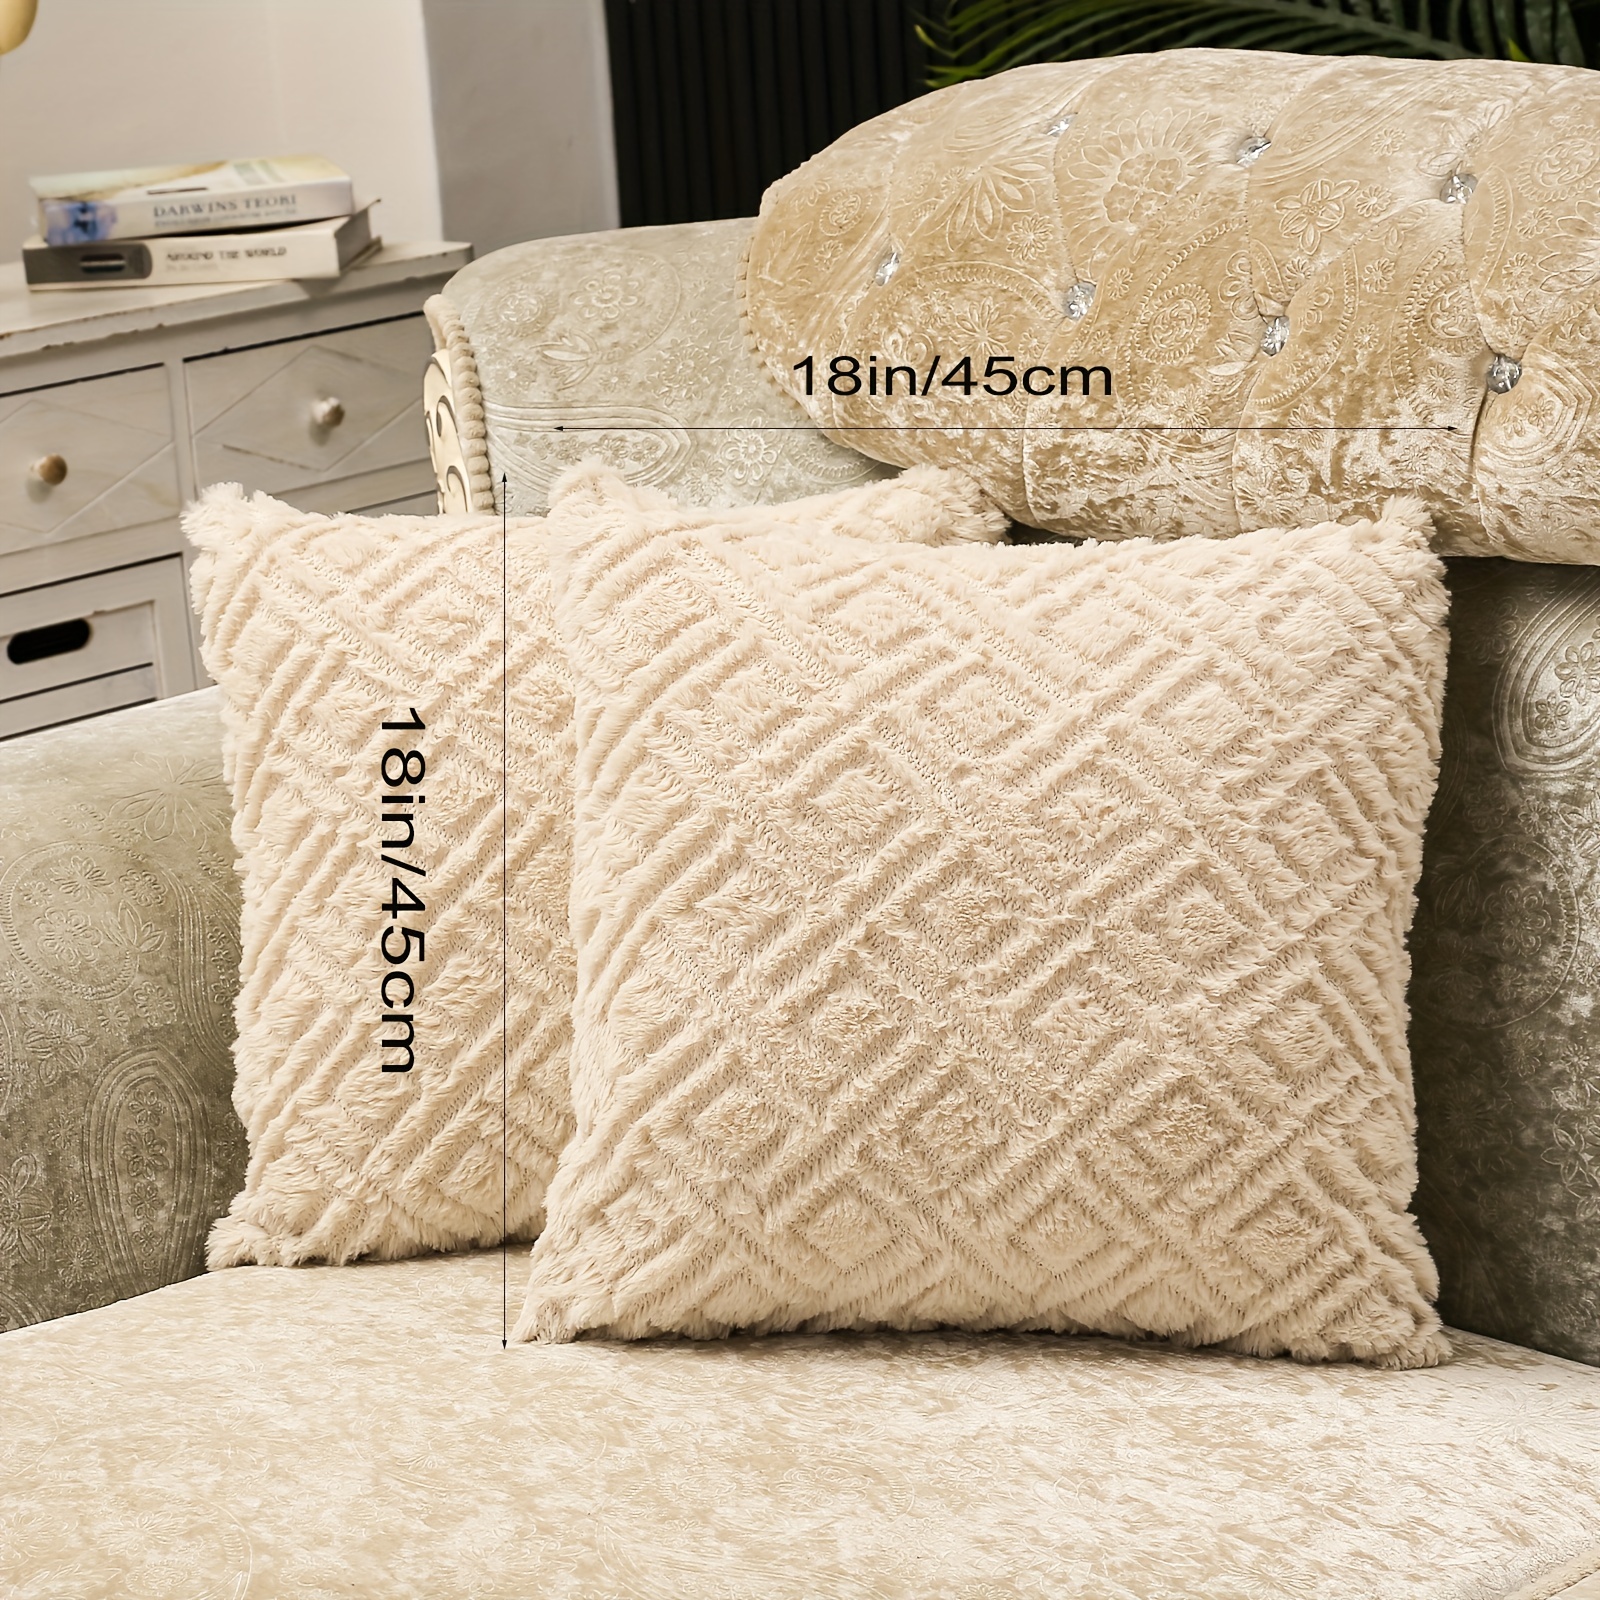 12 x 20 Pillow Form  Cojines de sofá decorativos, Almohadas decorativas, Relleno  para cojines